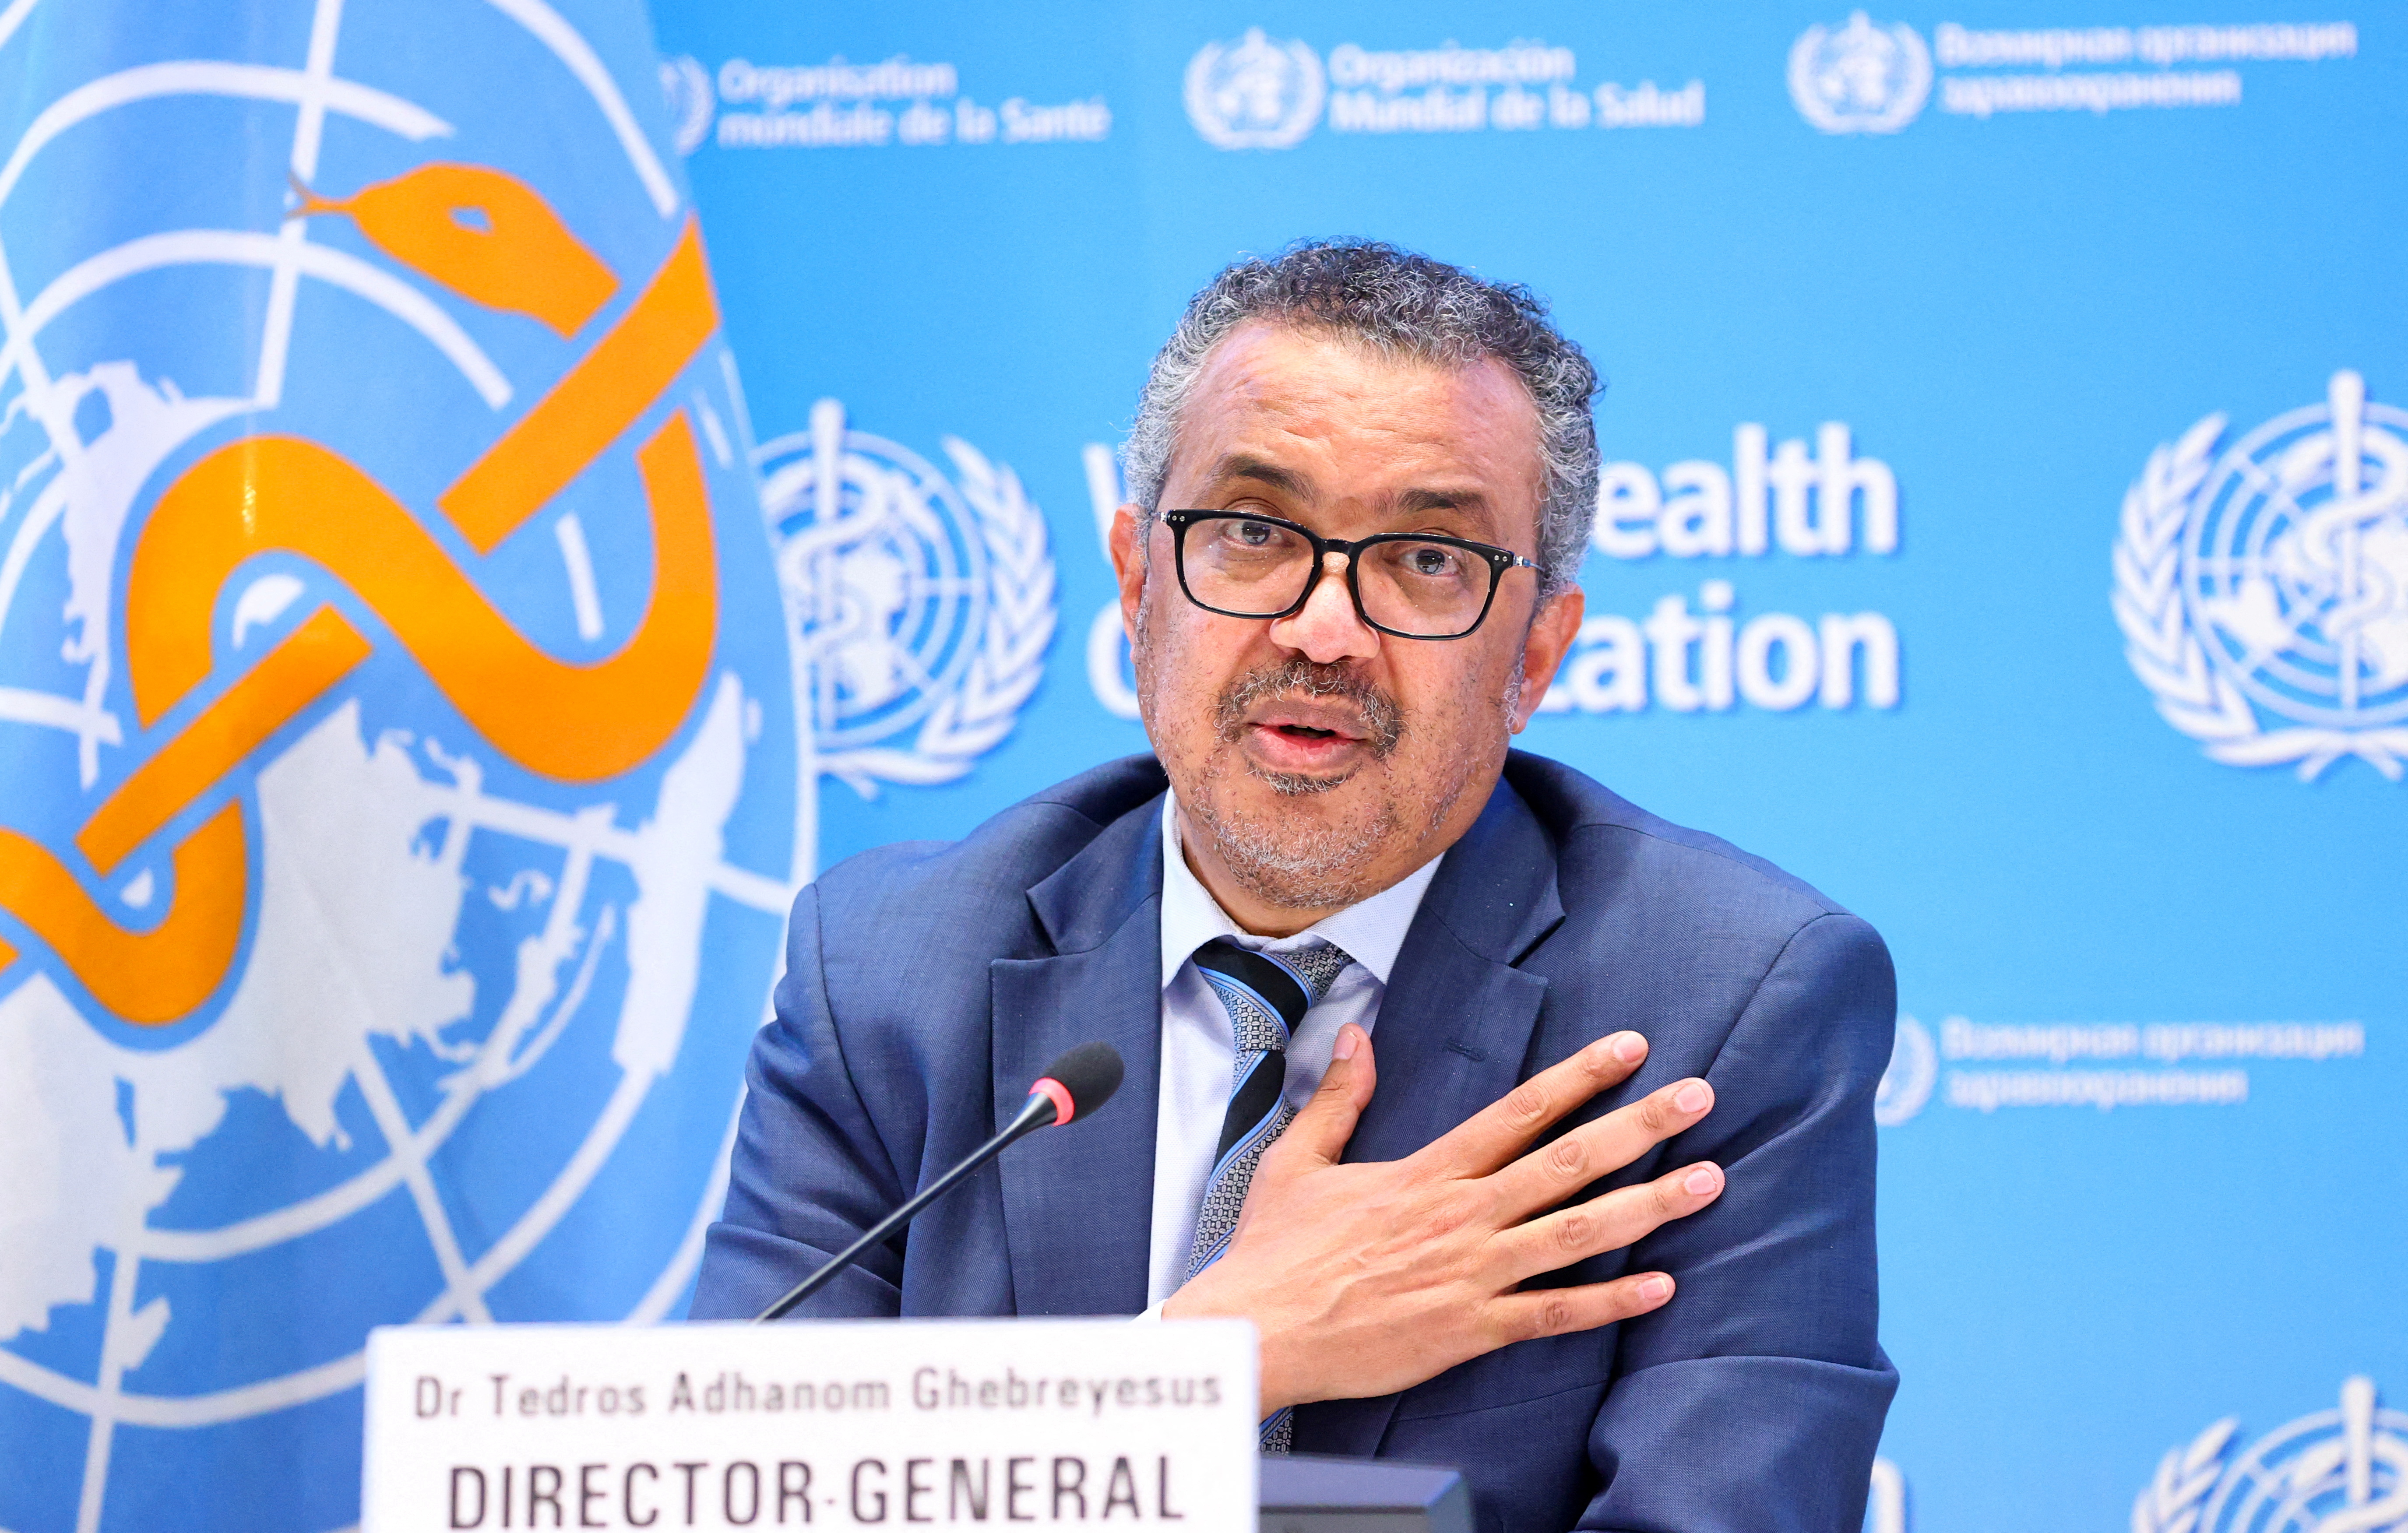 FOTO DE ARCHIVO: Tedros Adhanom Ghebreyesus, director general de la Organización Mundial de la Salud (OMS), habla durante una conferencia de prensa en Ginebra, Suiza, el 20 de diciembre de 2021. REUTERS/Denis Balibouse